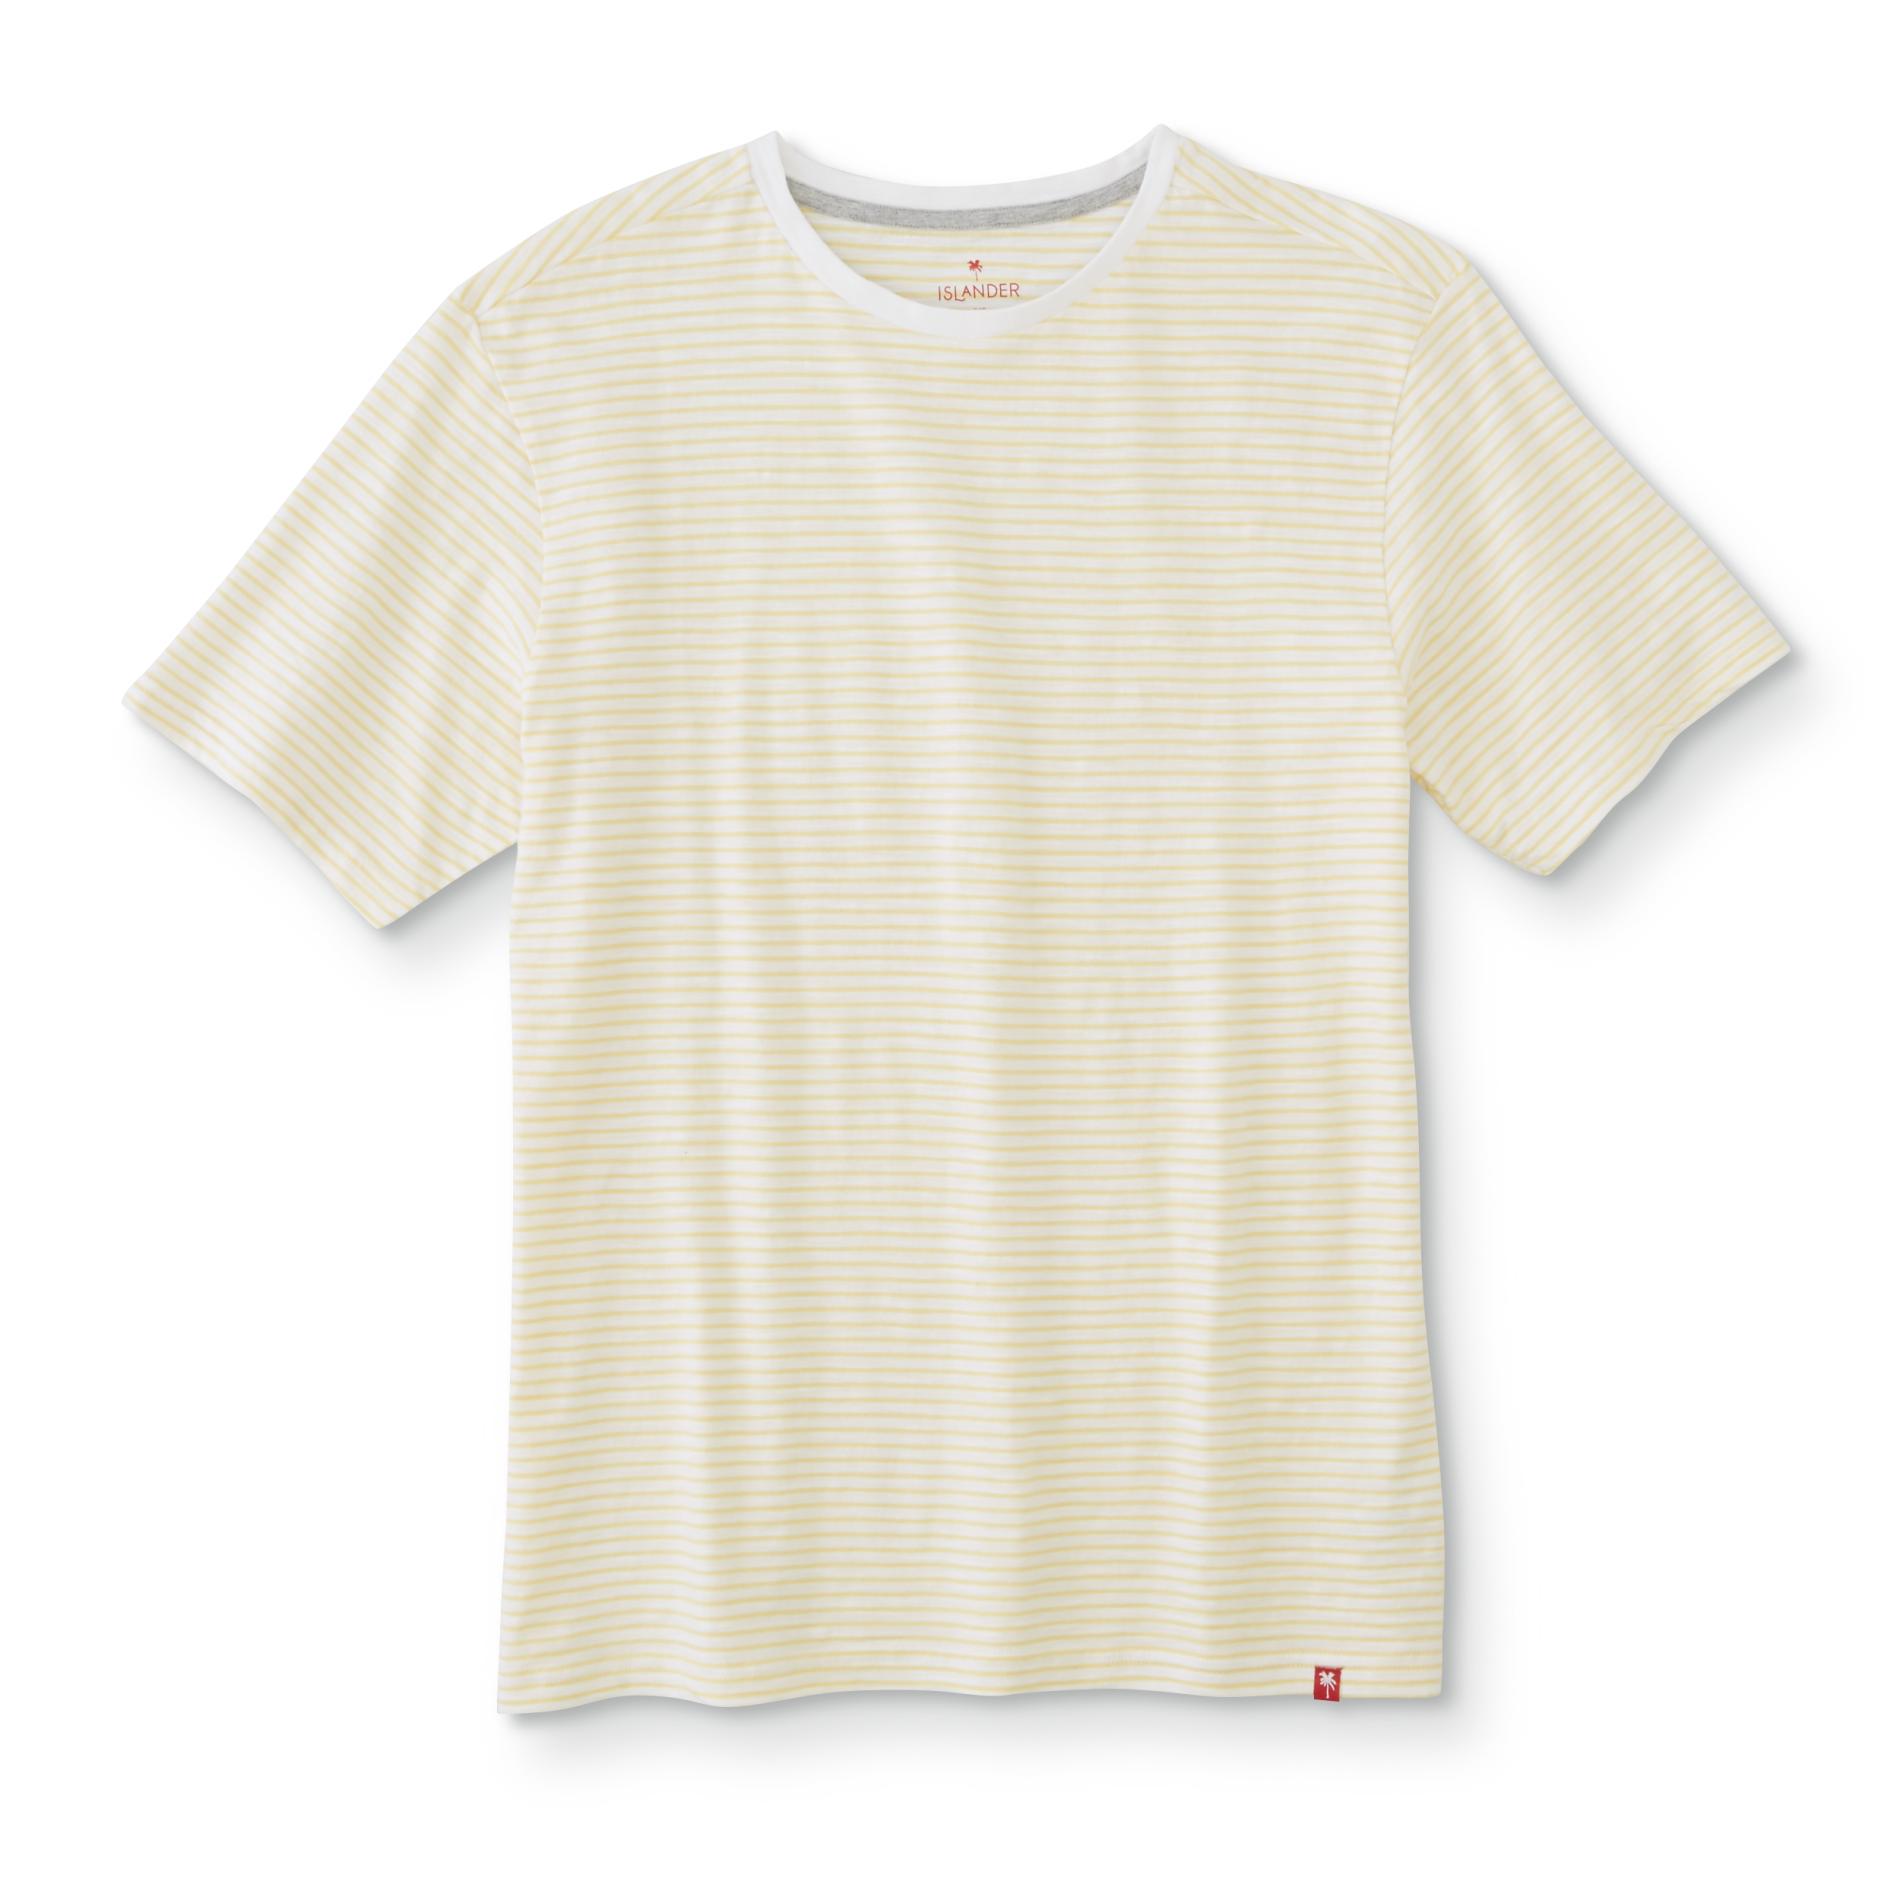 Islander Men's Short Sleeve Striped T-Shirt